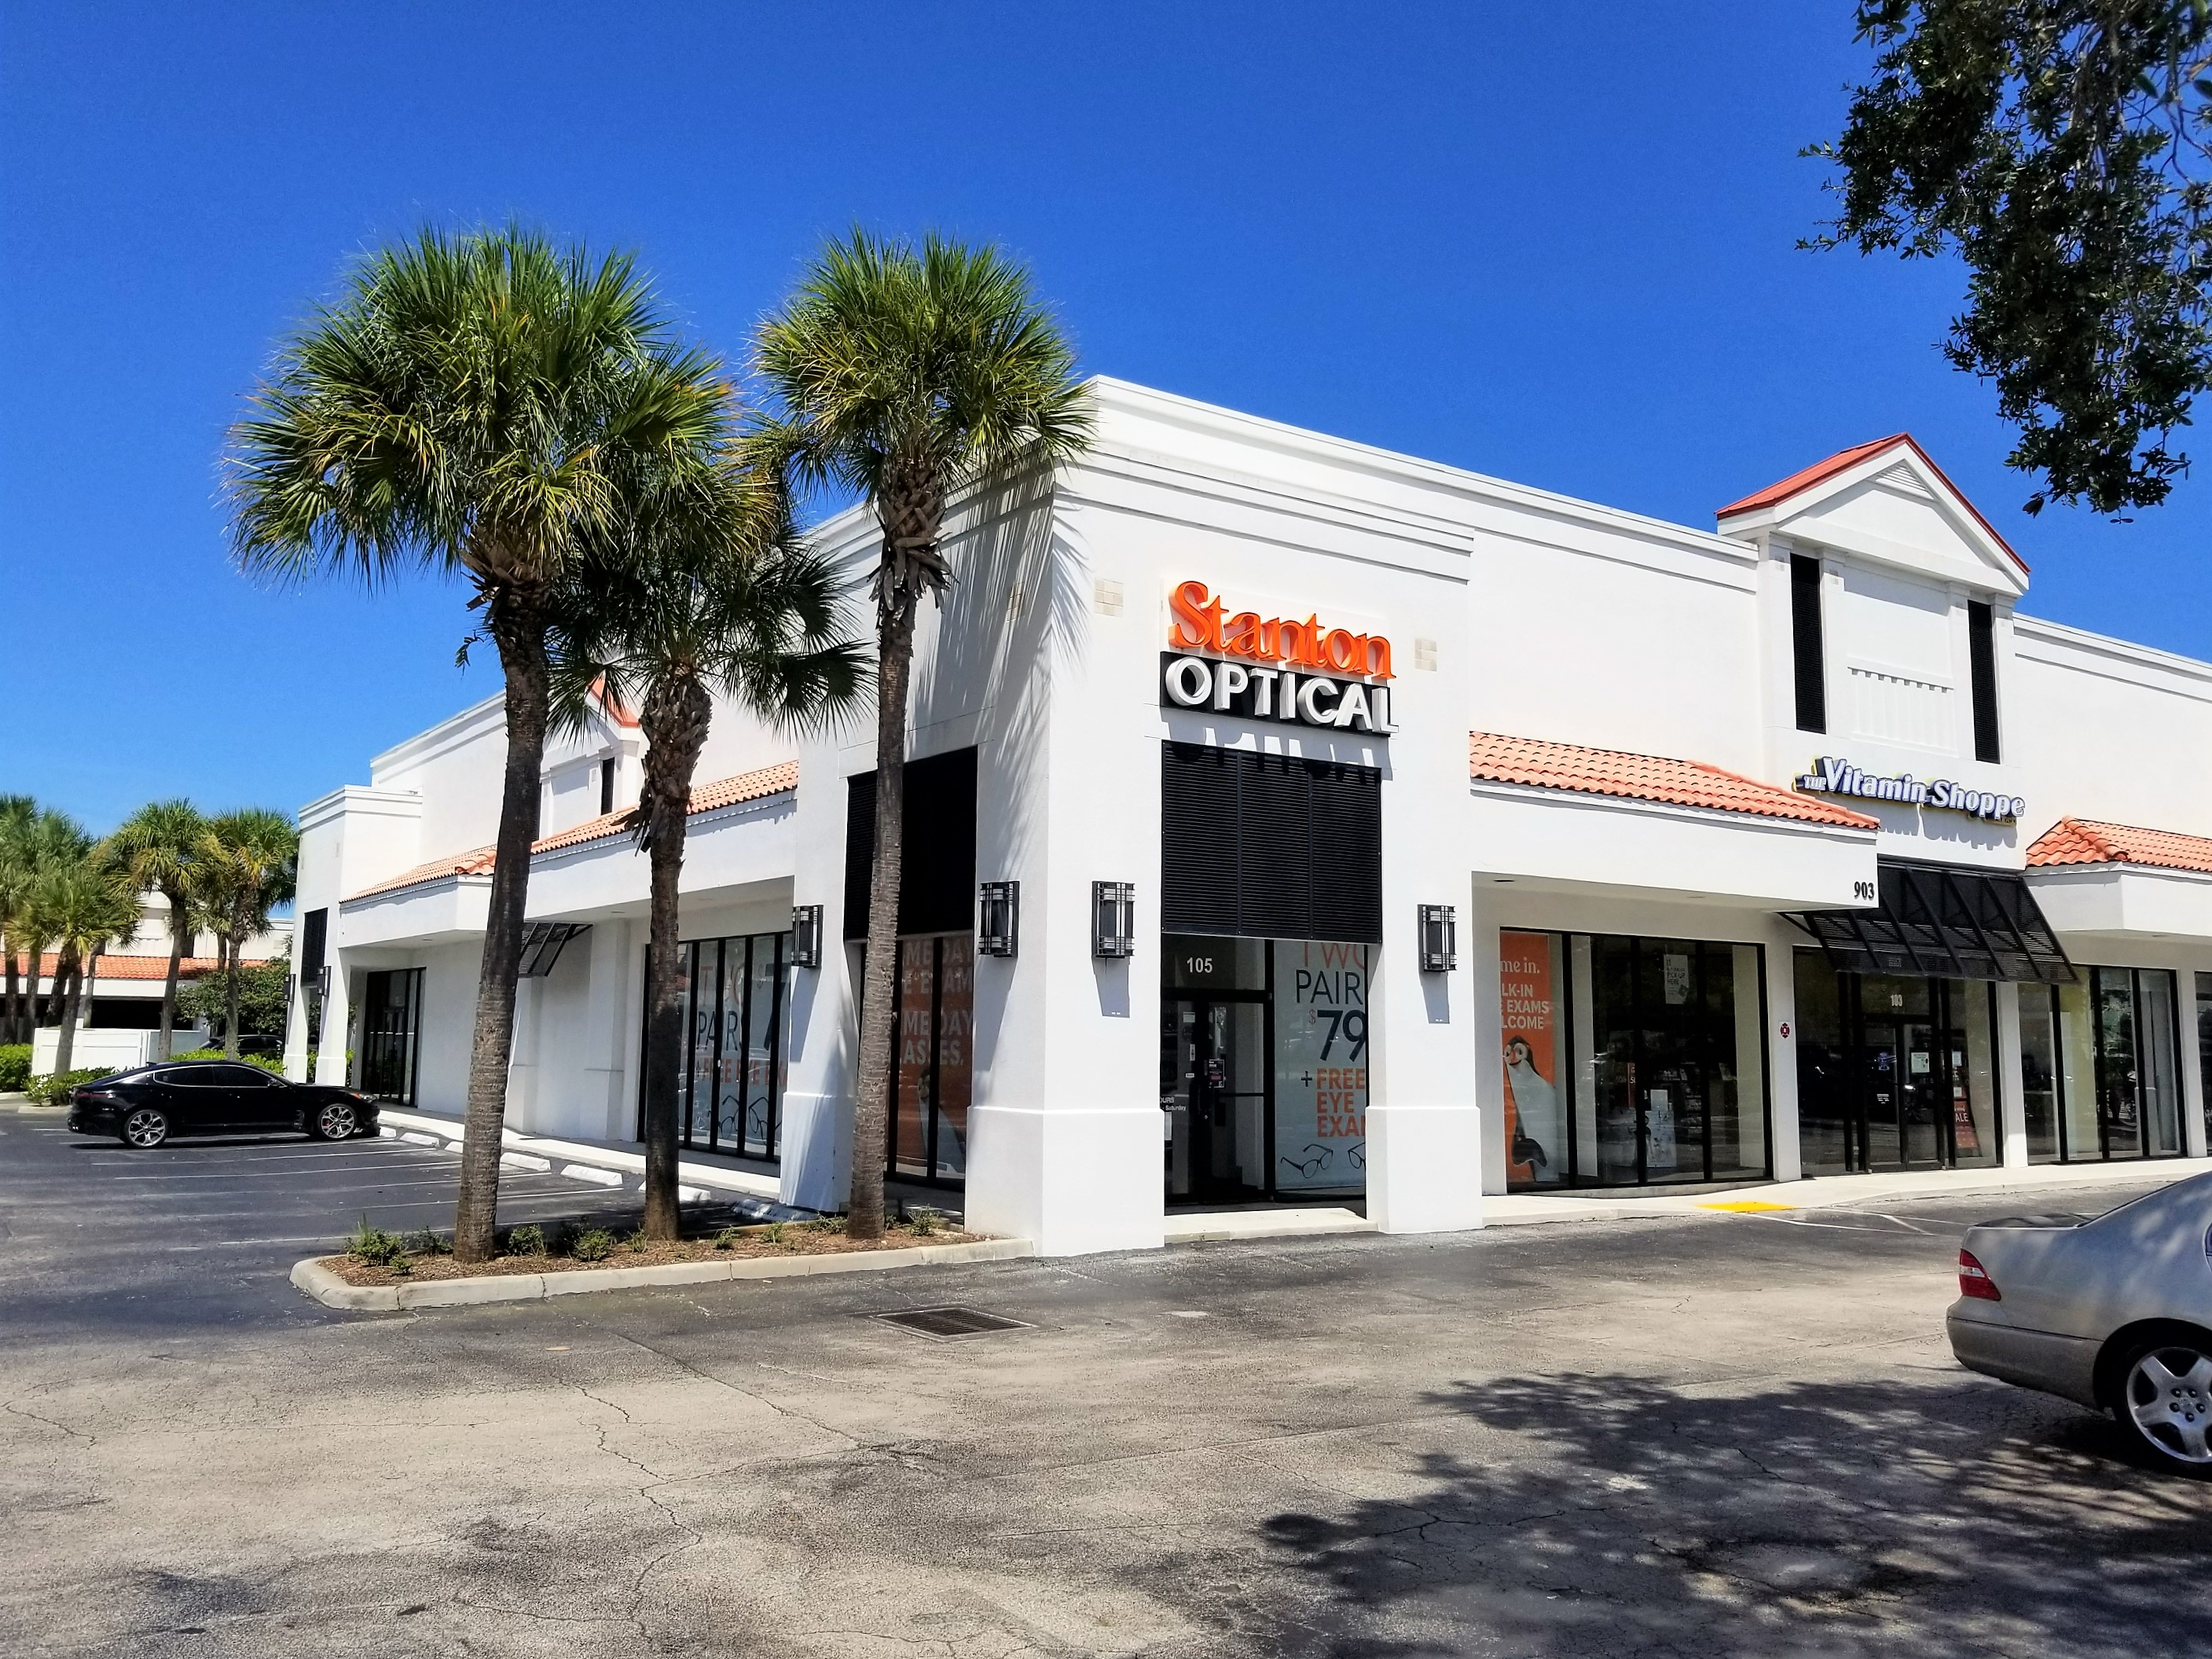 Storefront at Stanton Optical store in Jupiter, FL 33458